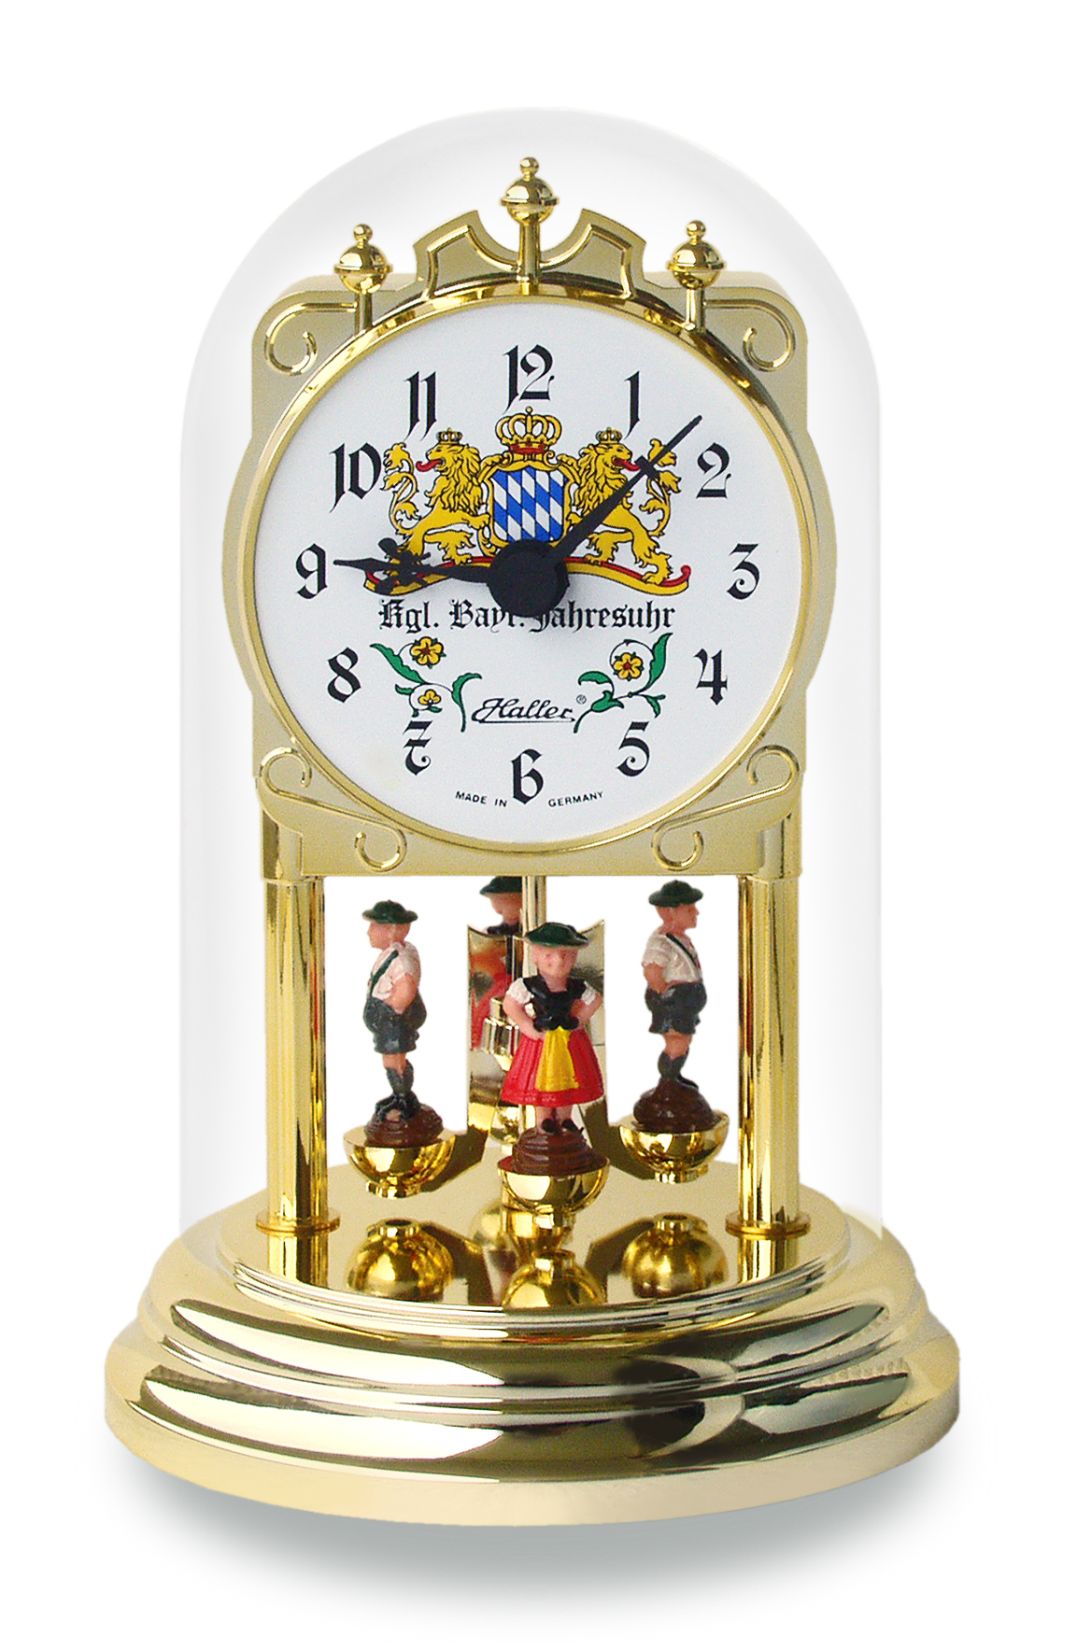 Haller quartz annual clock Lola with Bavarian figures